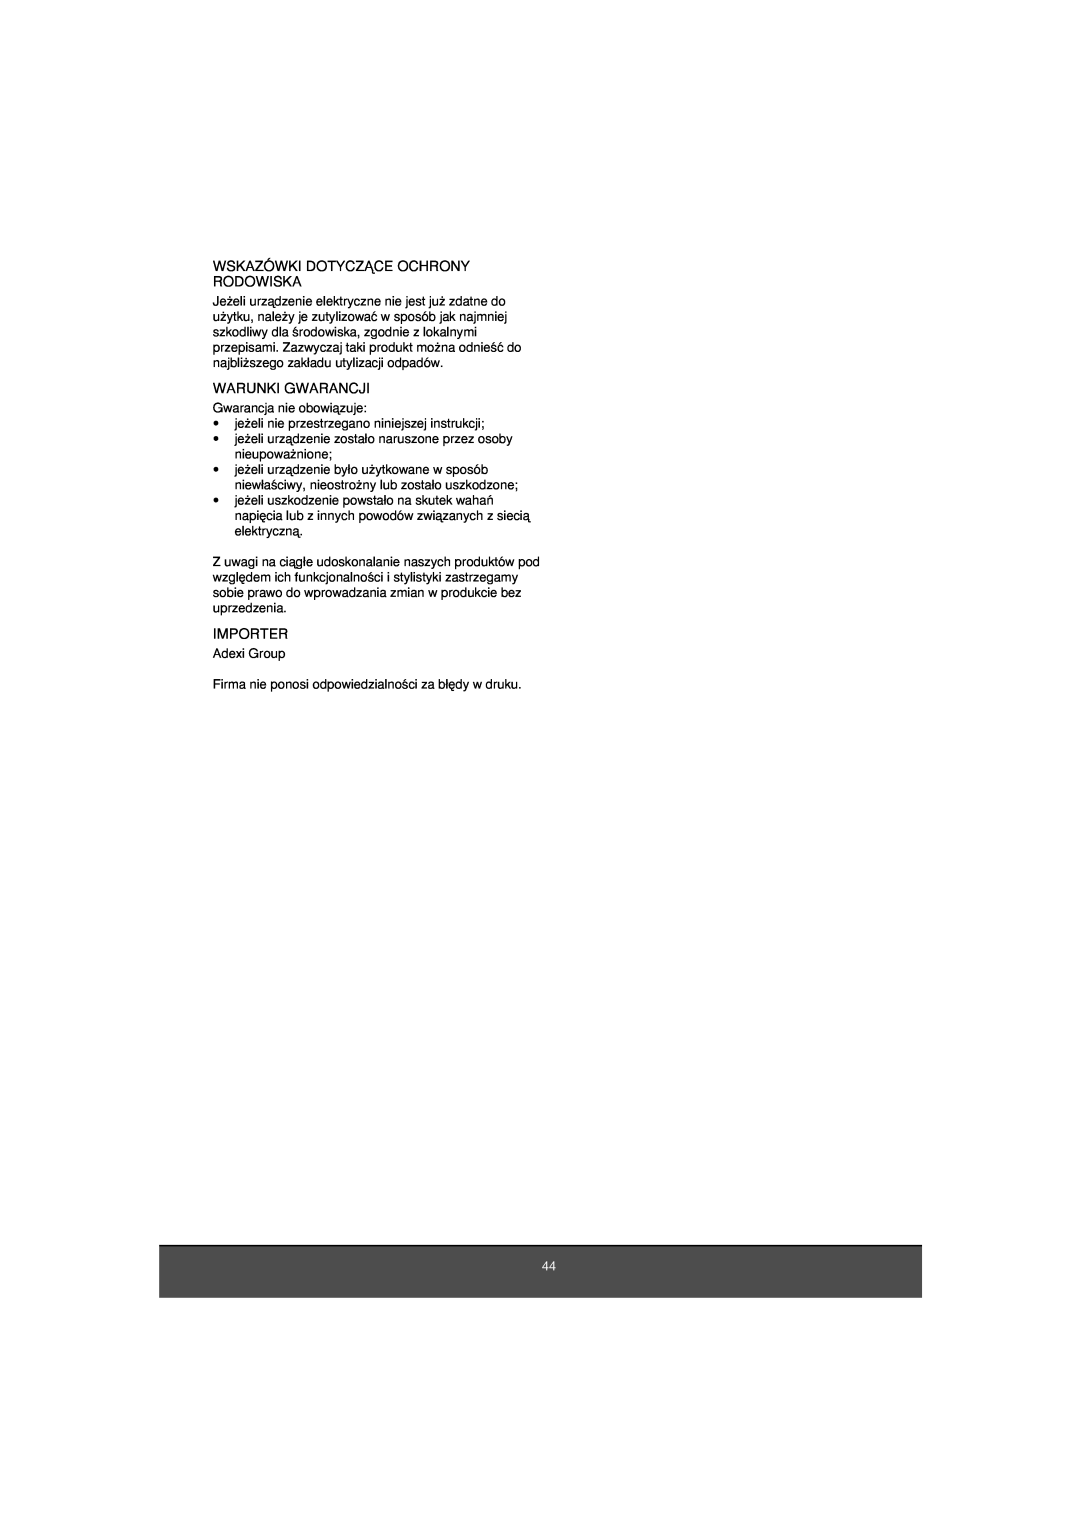 Melissa 653-081 manual Wskazówki Dotyczñce Ochrony Rodowiska, Warunki Gwarancji, Importer 